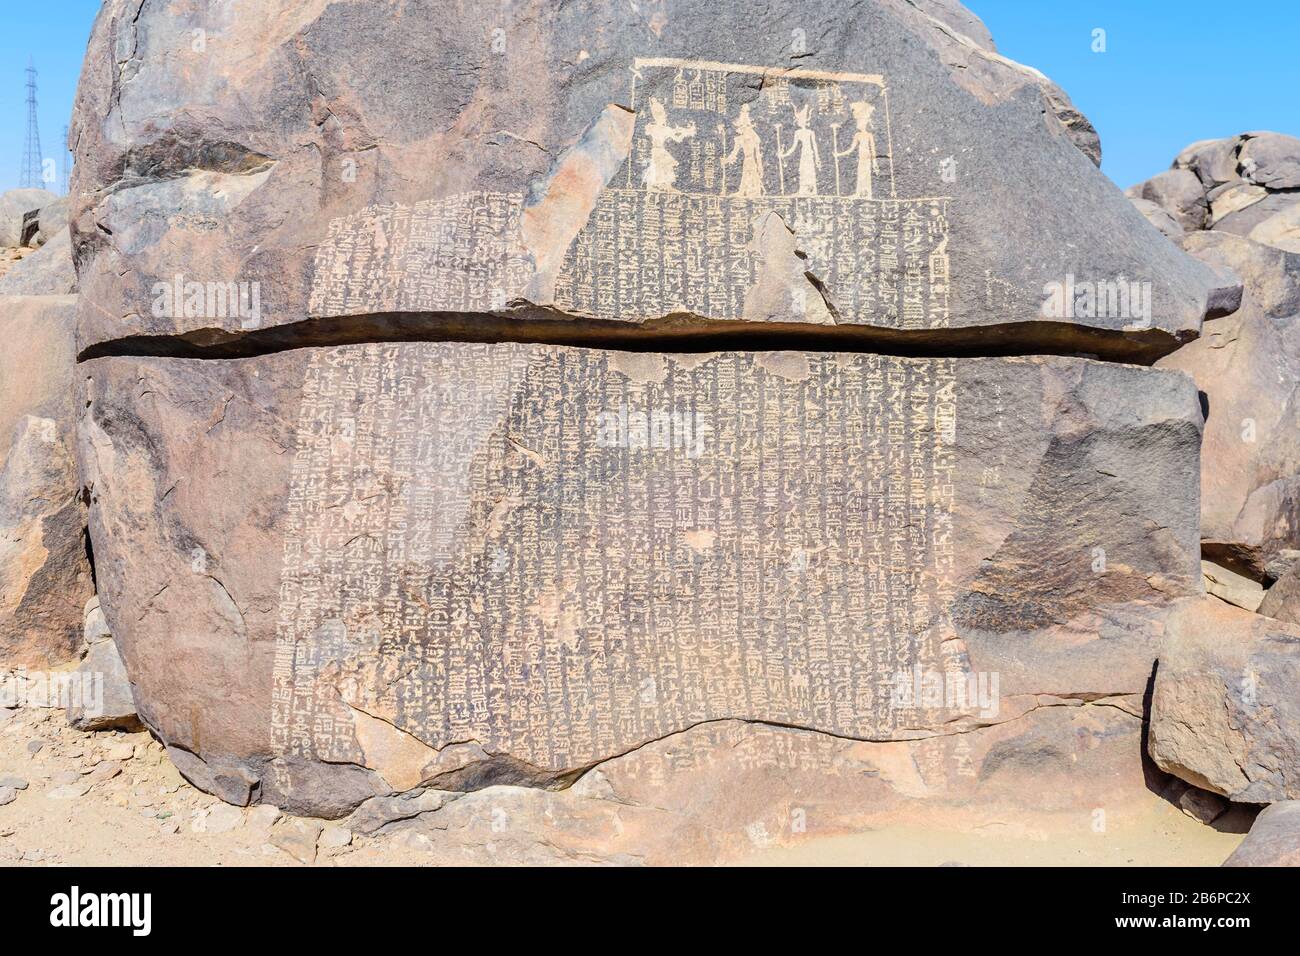 Die Hungerwelse Stela ist eine in ägyptischen Hieroglyphen geschriebene Aufschrift, die sich auf der Insel Sehel im Nil bei Assuan, Ägypten befindet. Stockfoto